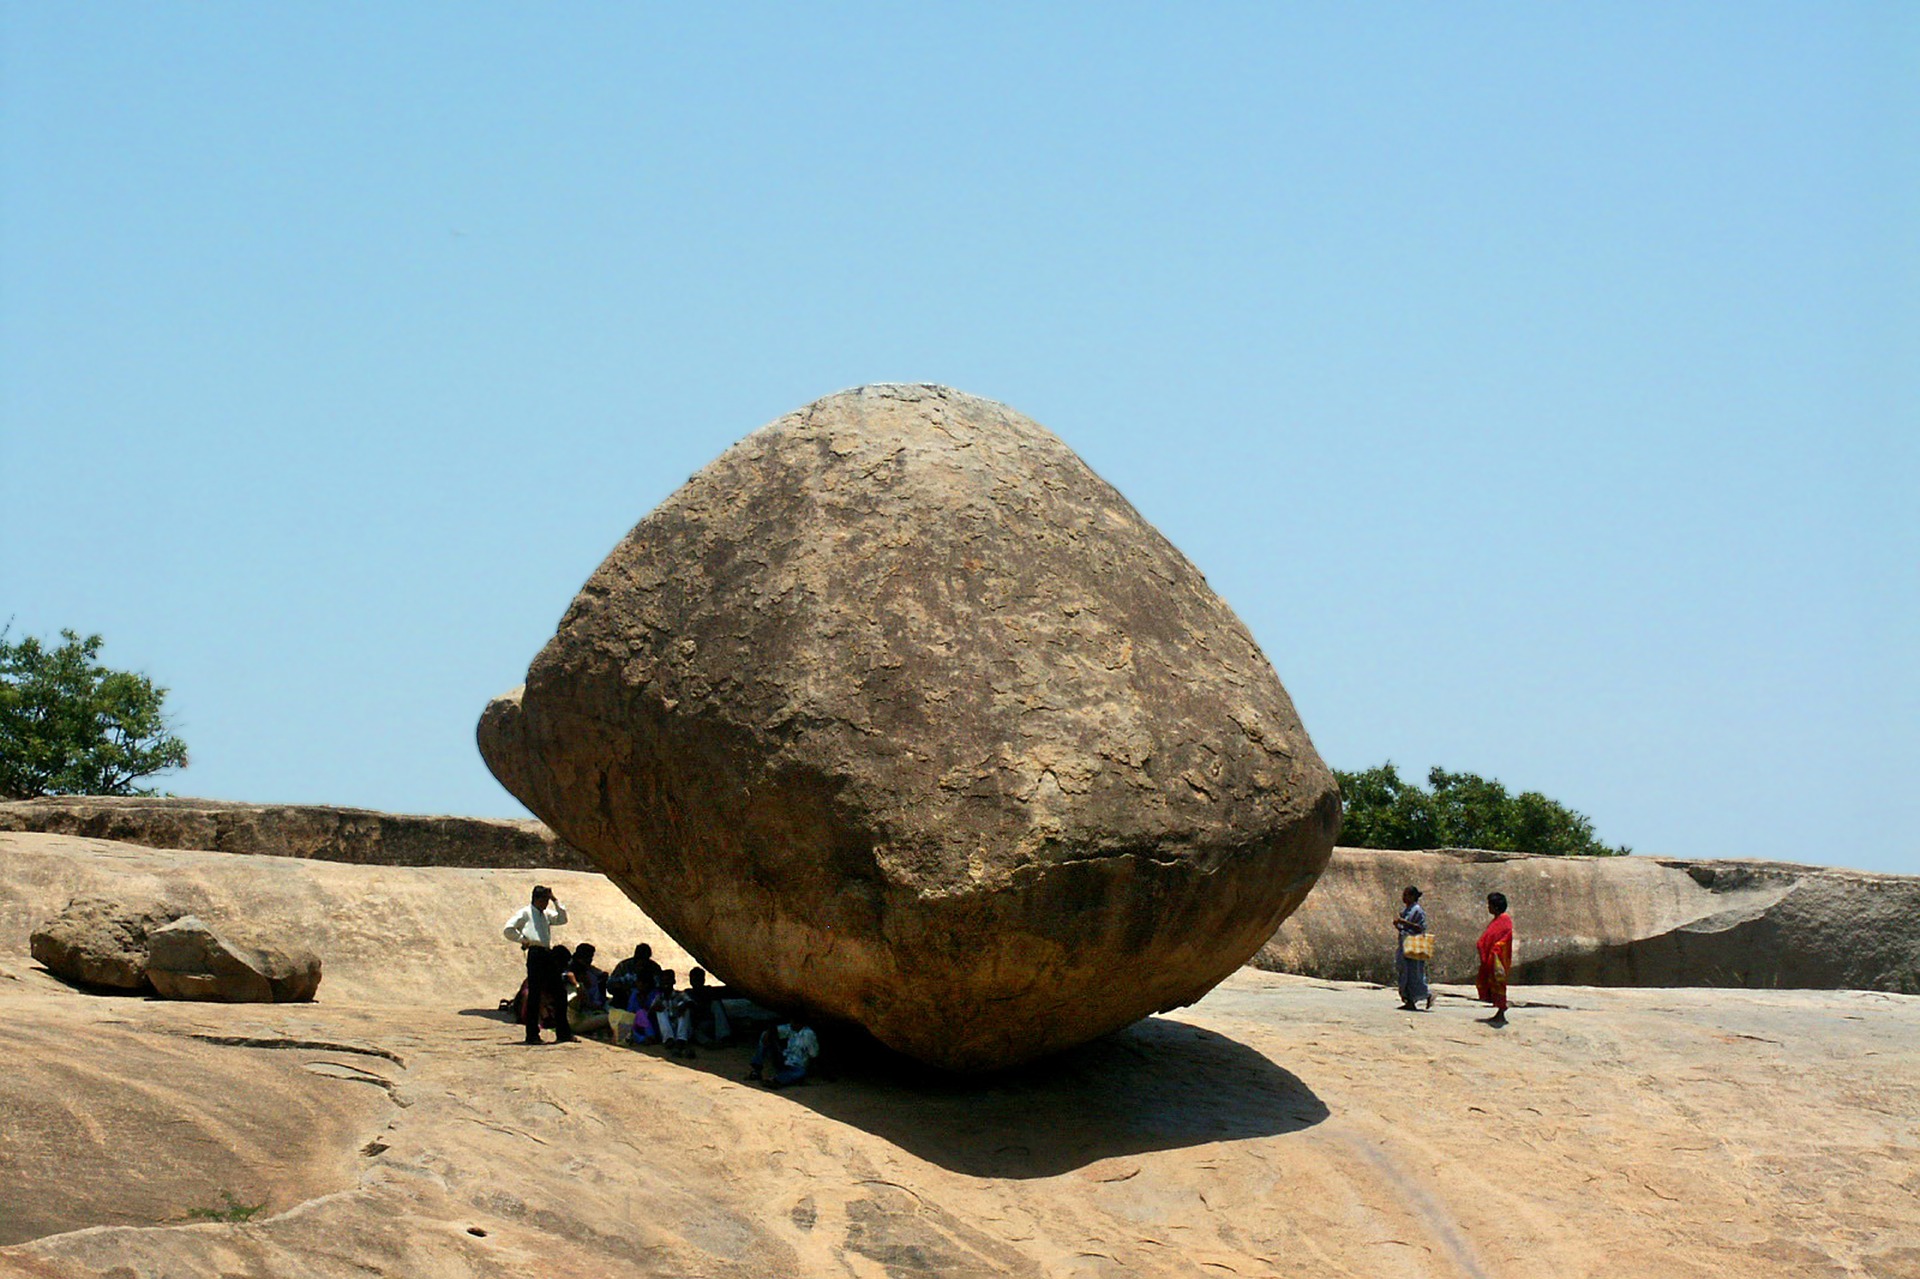 India datos generales: Familia en India junto a roca de gran tamaño